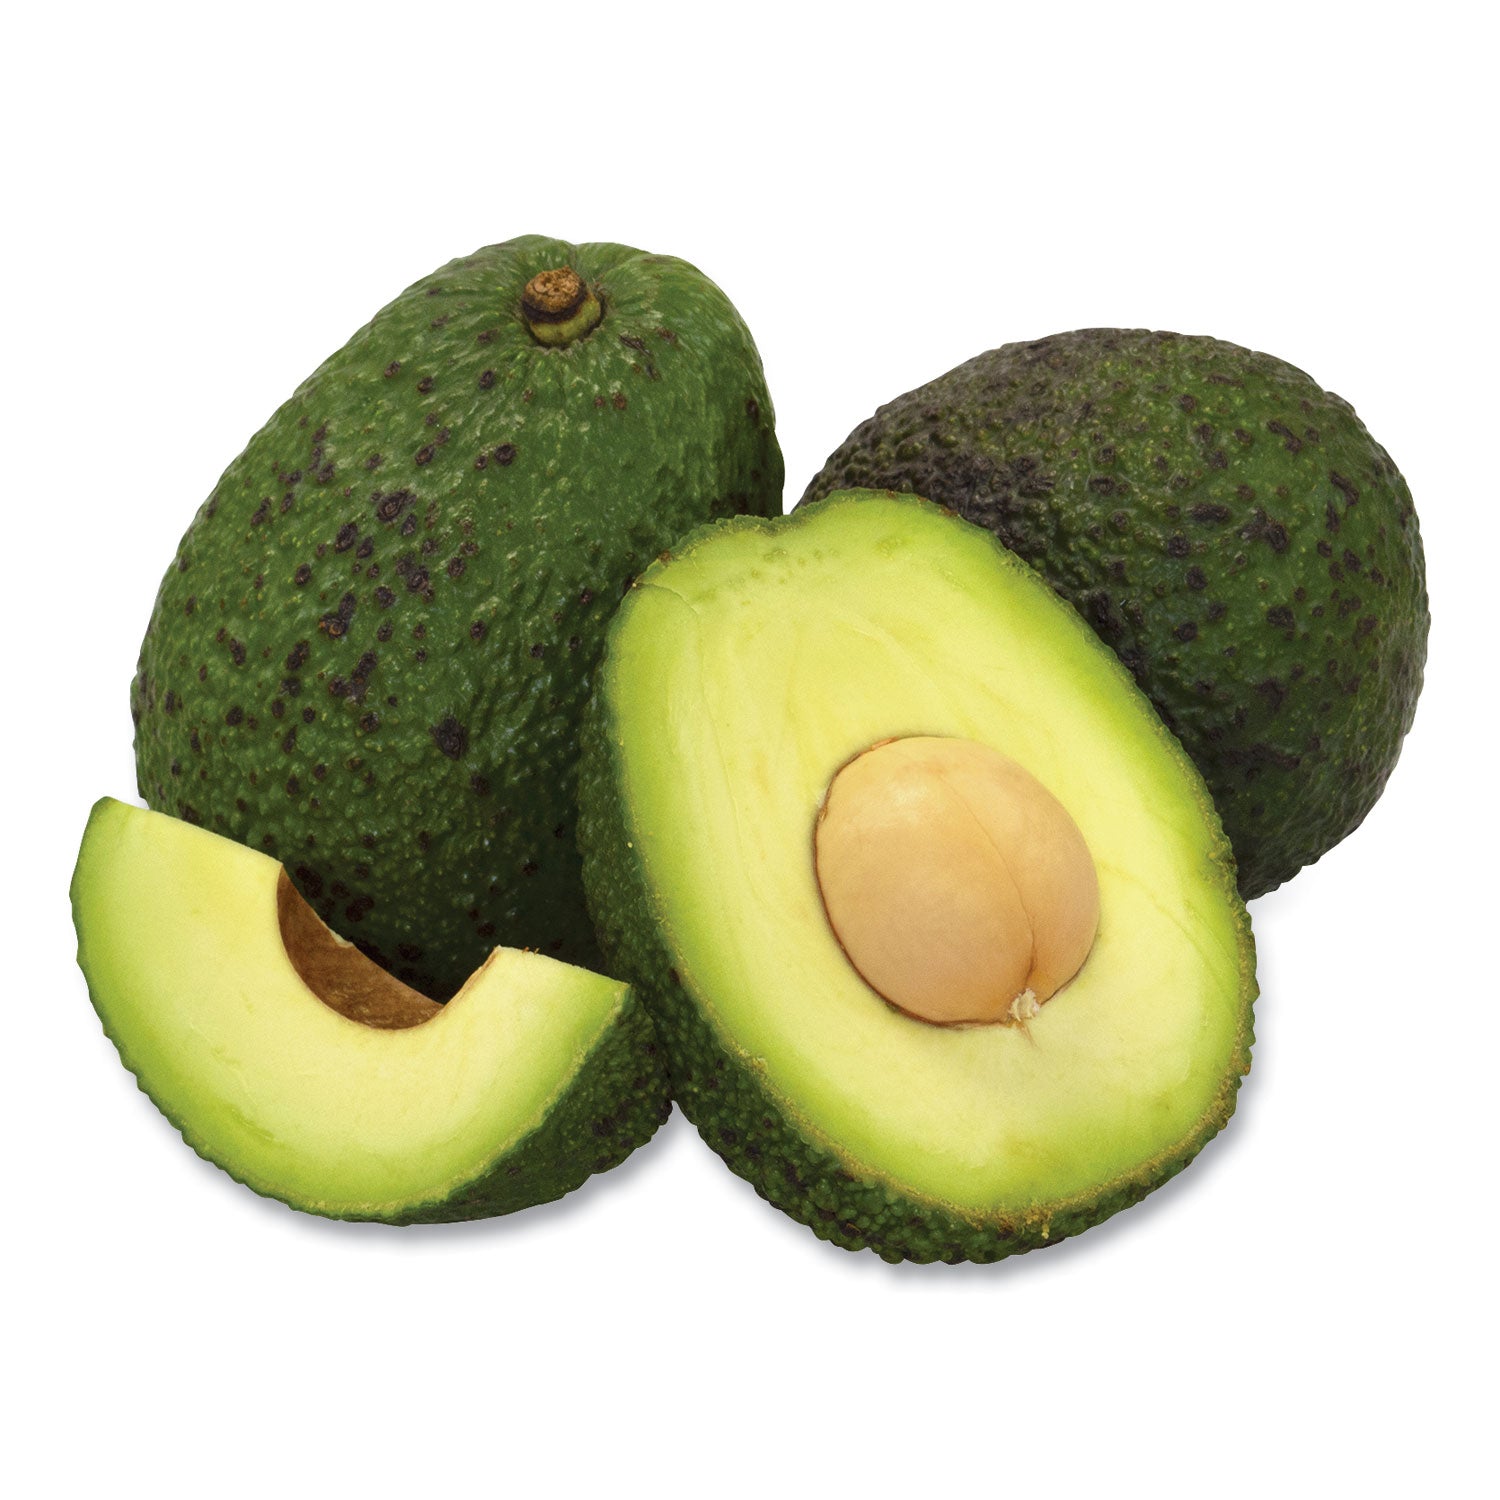 fresh-avocados-5-carton-ships-in-1-3-business-days_grr90000133 - 1